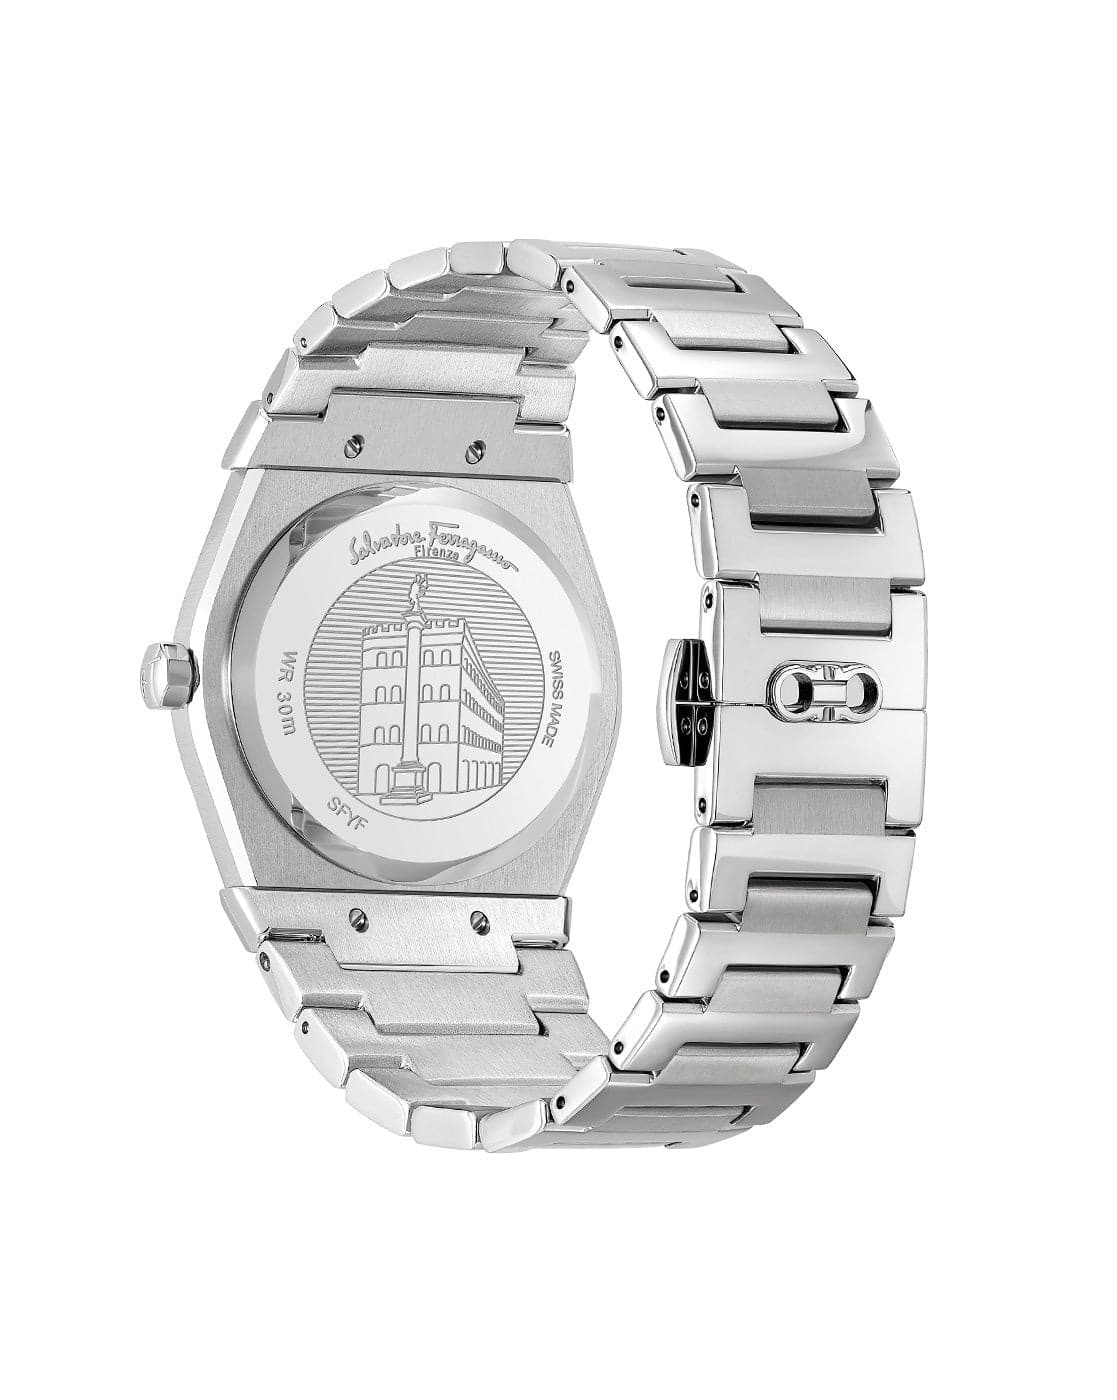 SALVATORE FERRAGAMO Vega Analogue Wrist Watch SFGY00621 - Kamal Watch Company